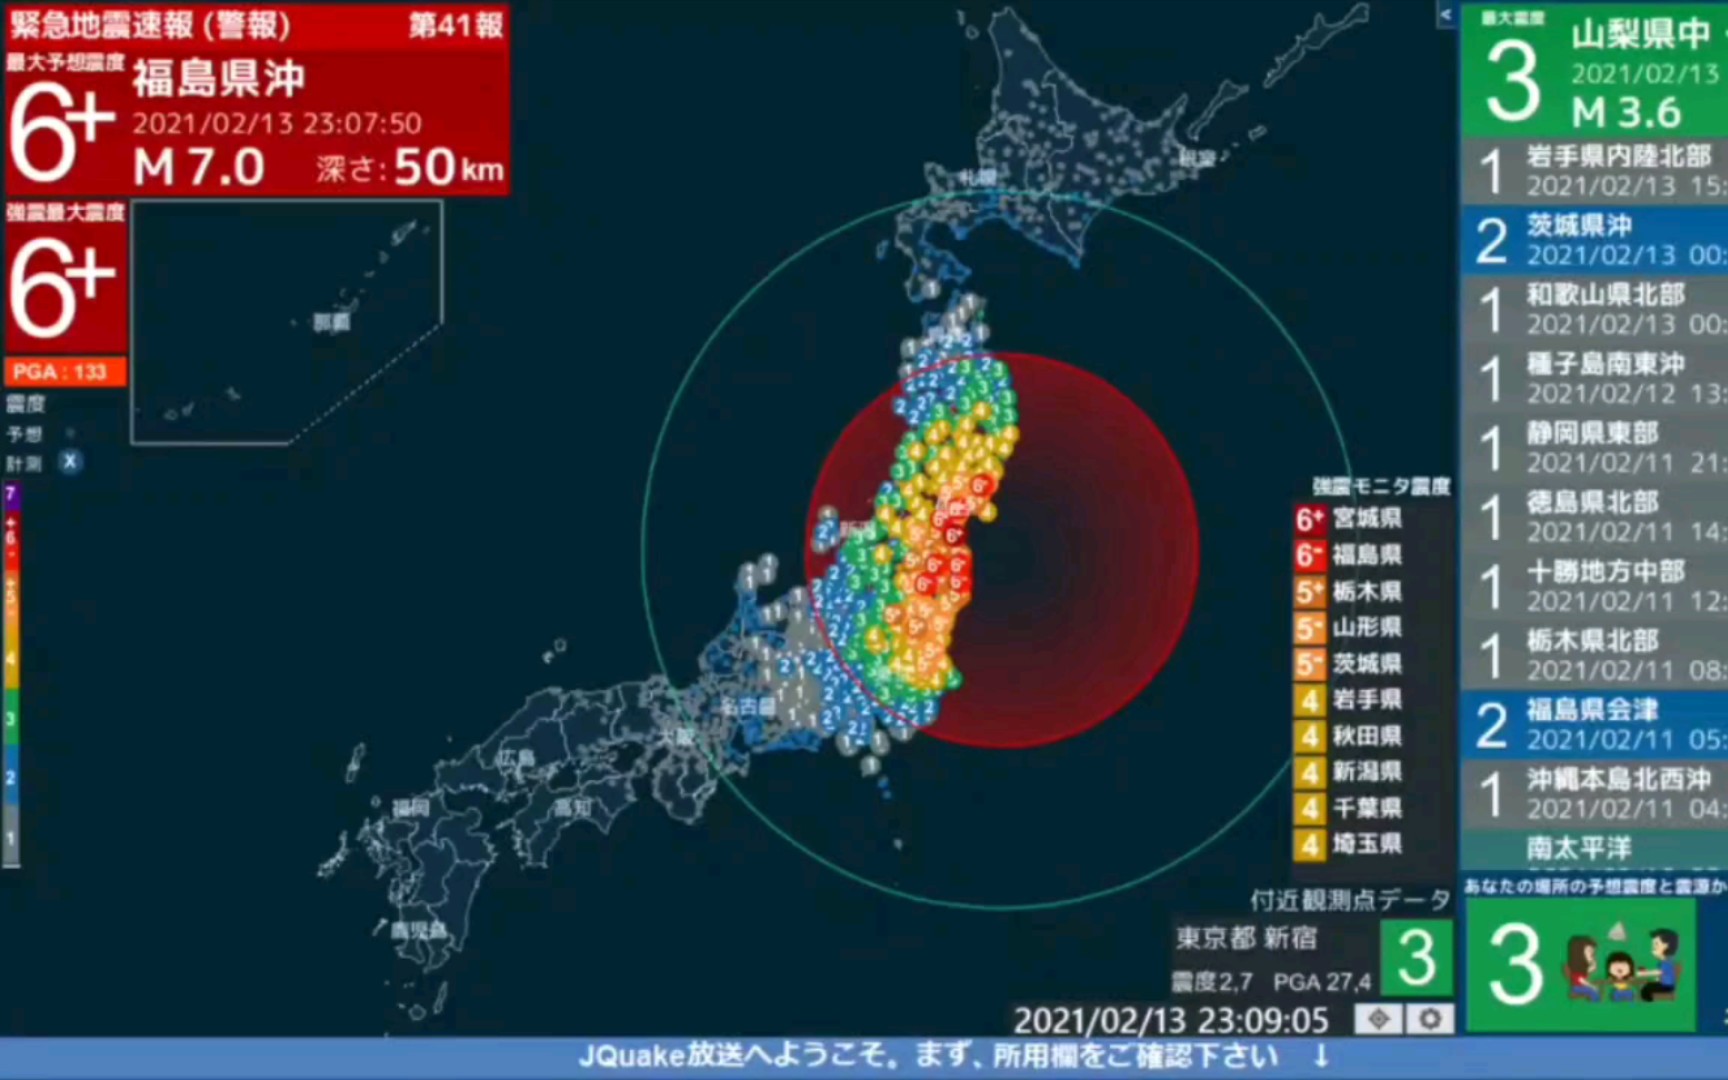 東京 東日本 震度 大震災 東日本大震災で東京の震度はいくつだったんですか？